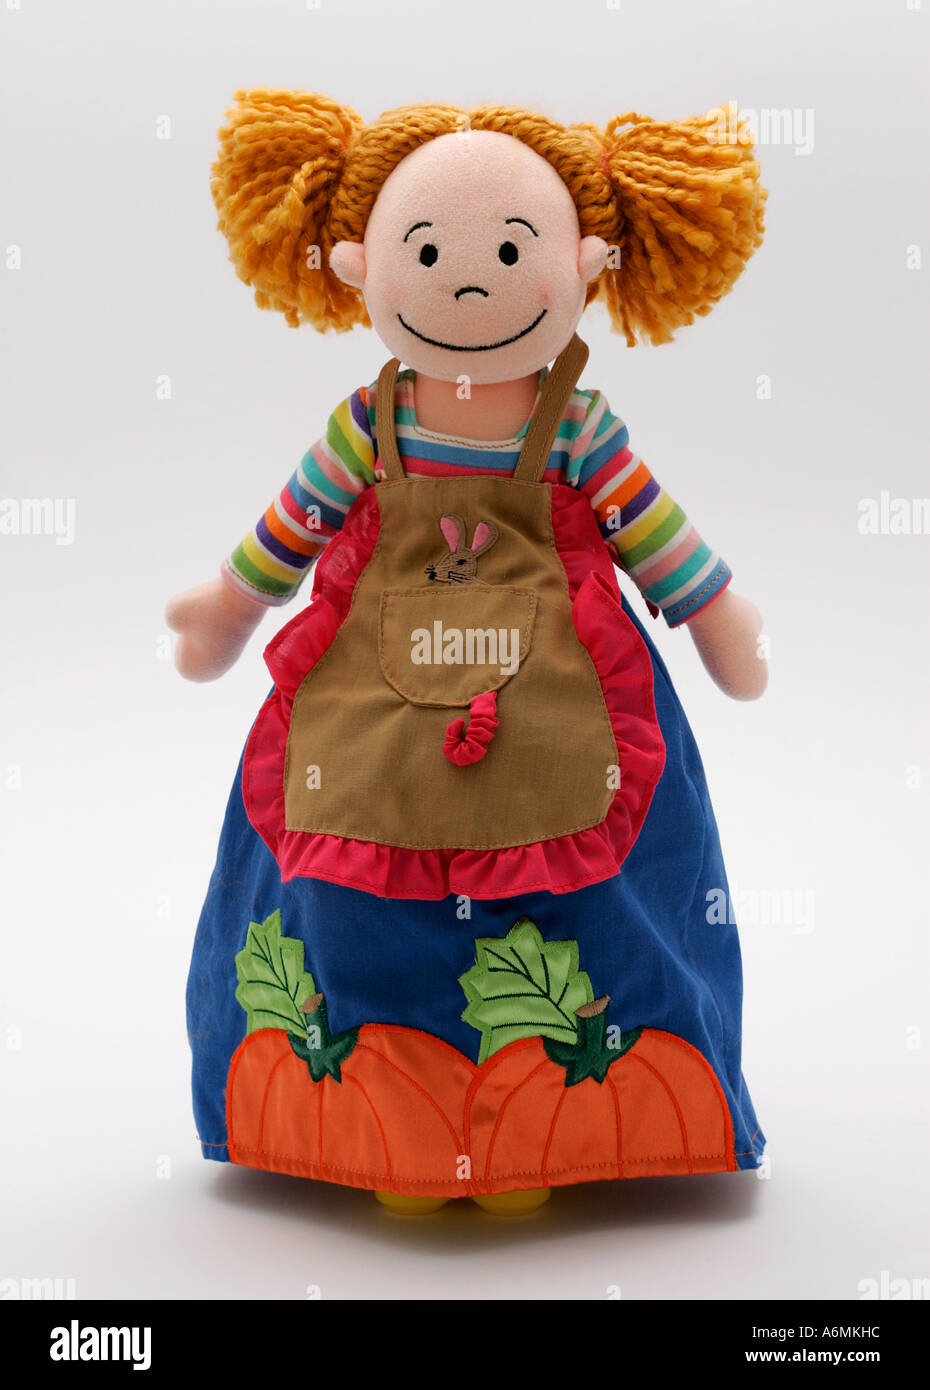 weiche Puppe Dolly Spielzeug Cinderella gefüllte Kleid Kleidung Lumpen  Diener vorne lächelndes Gesicht stehende Position unten Kind Kinder  Stockfotografie - Alamy